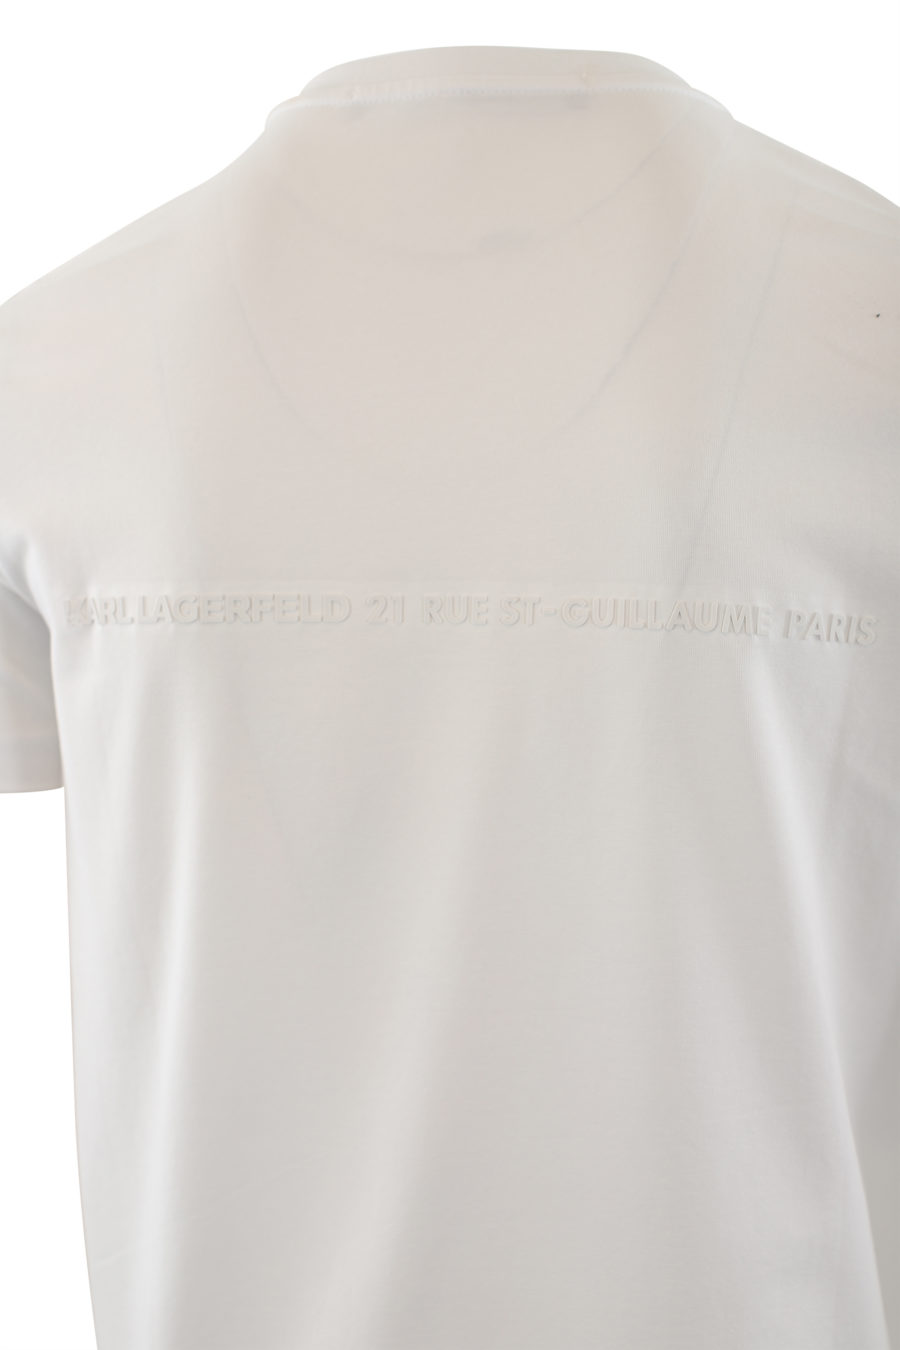 Camiseta blanca con logo de goma blanco - IMG 6528